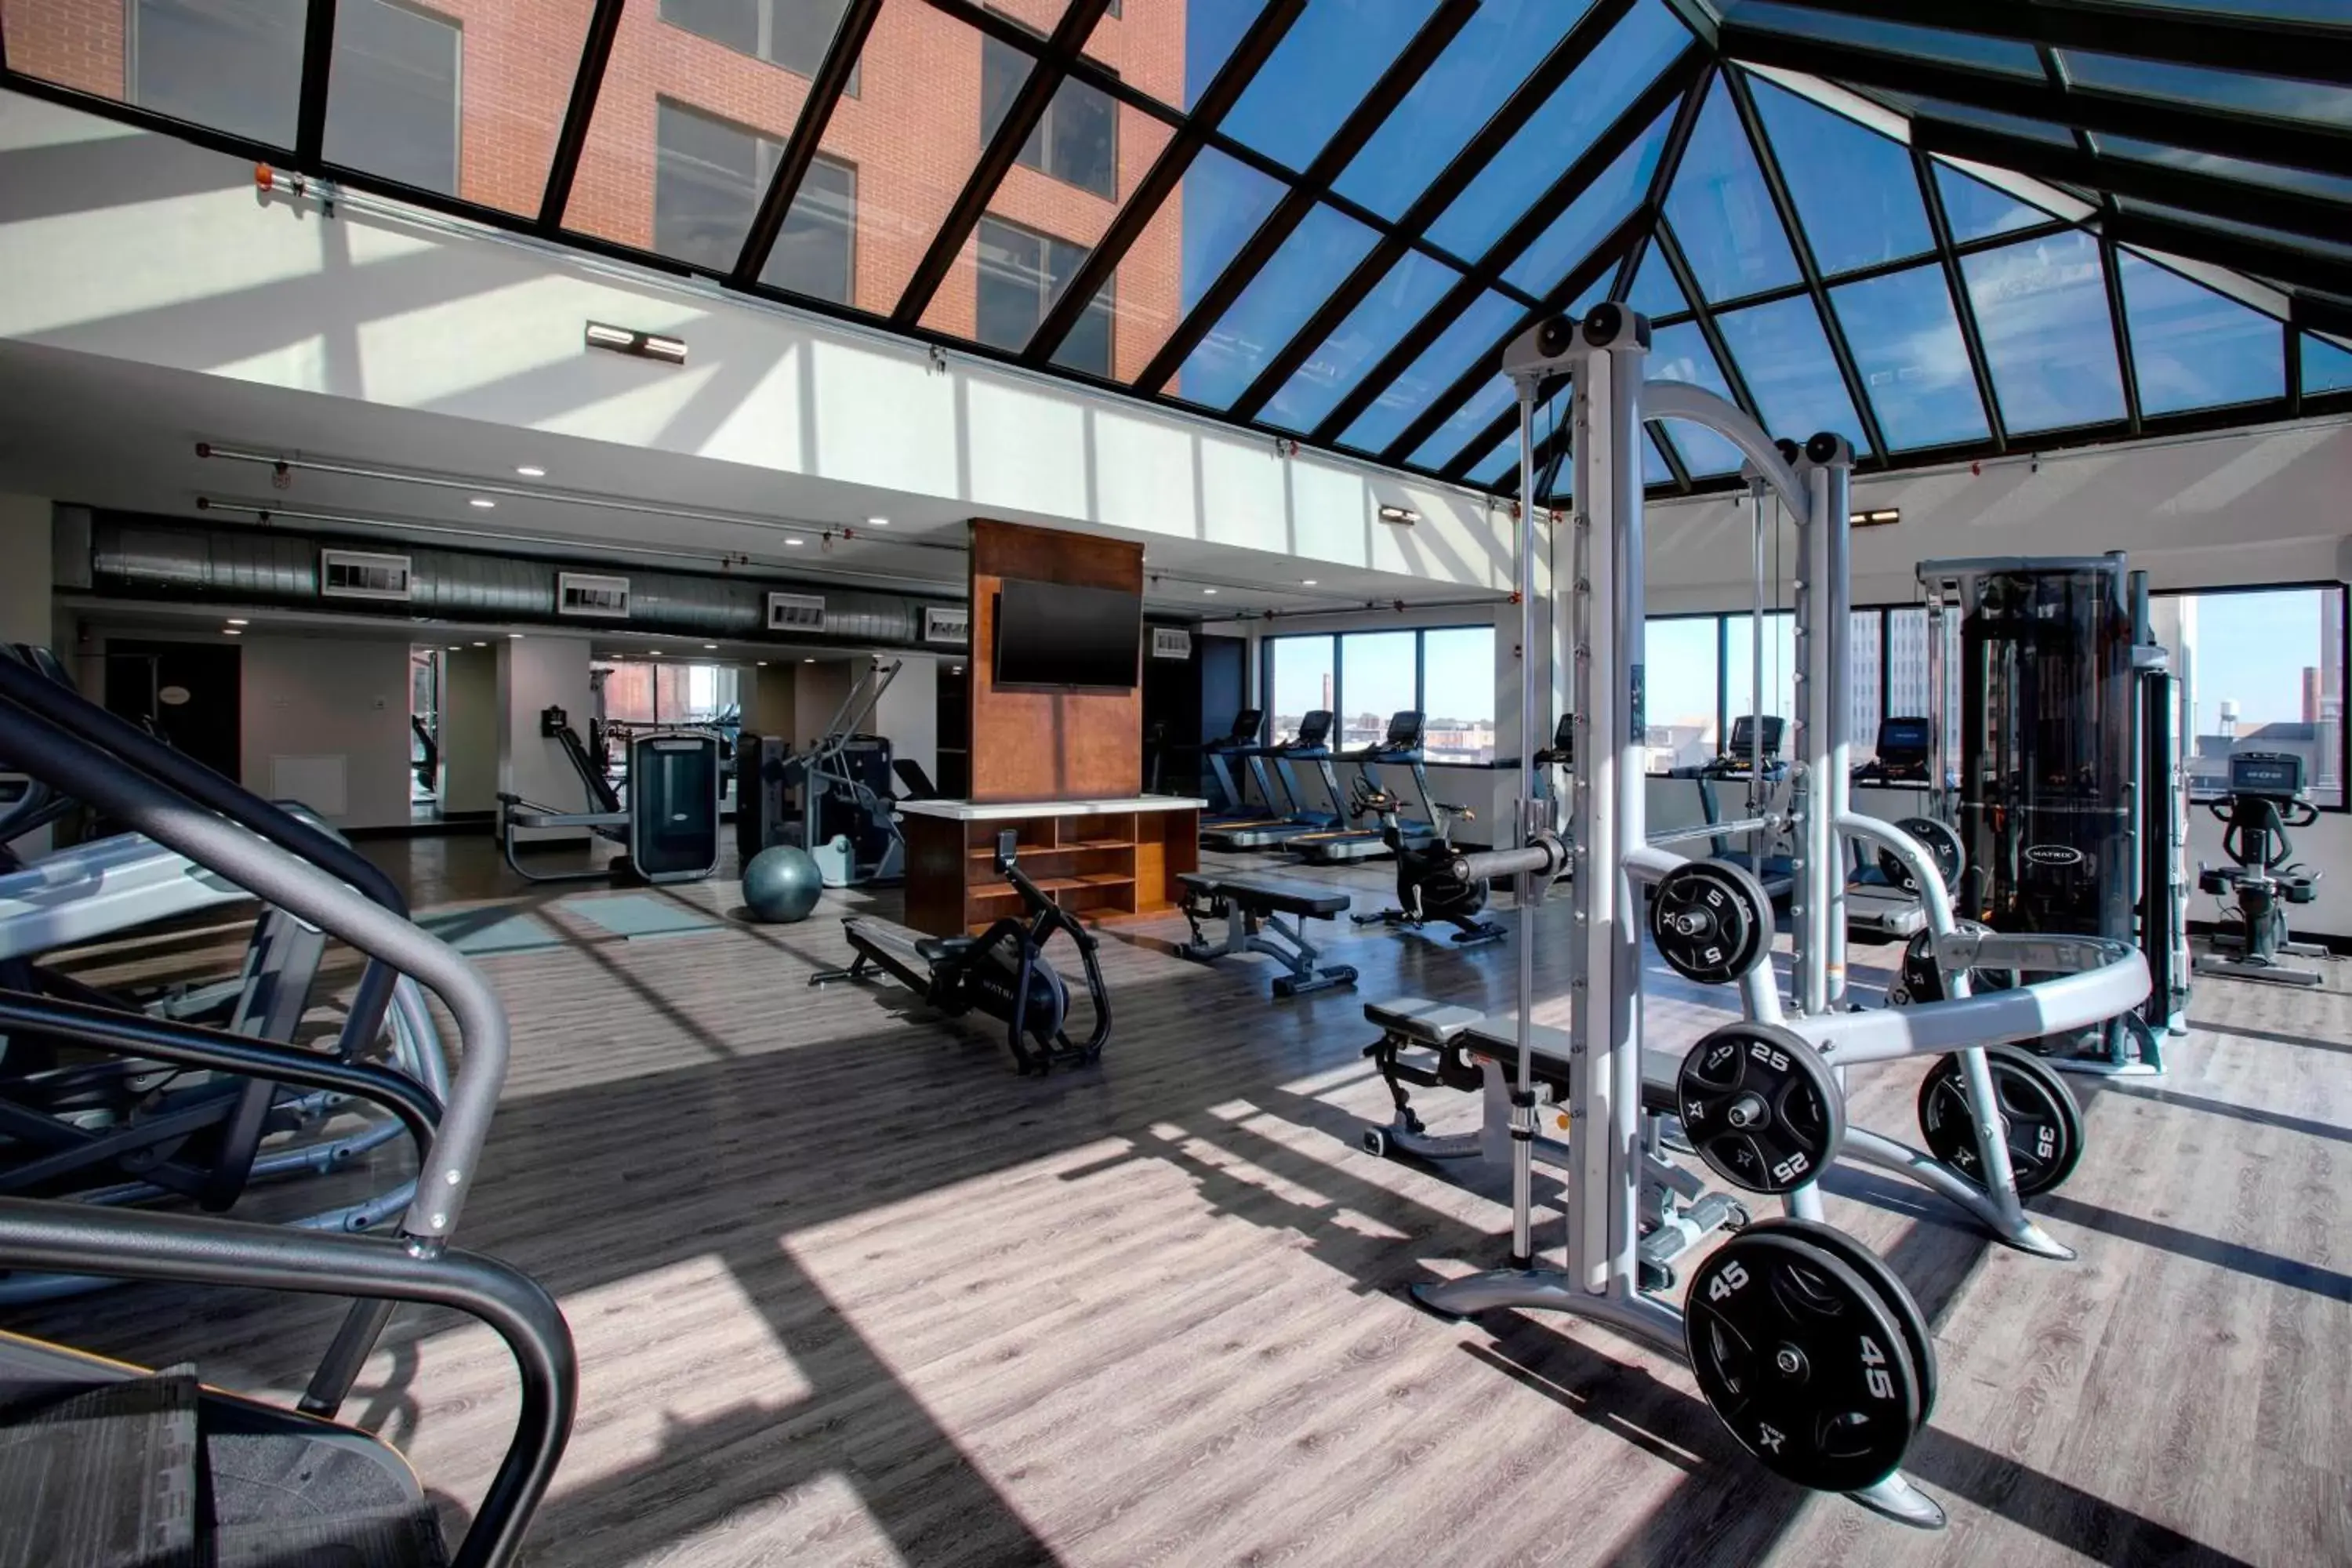 Fitness centre/facilities, Fitness Center/Facilities in Winston-Salem Marriott